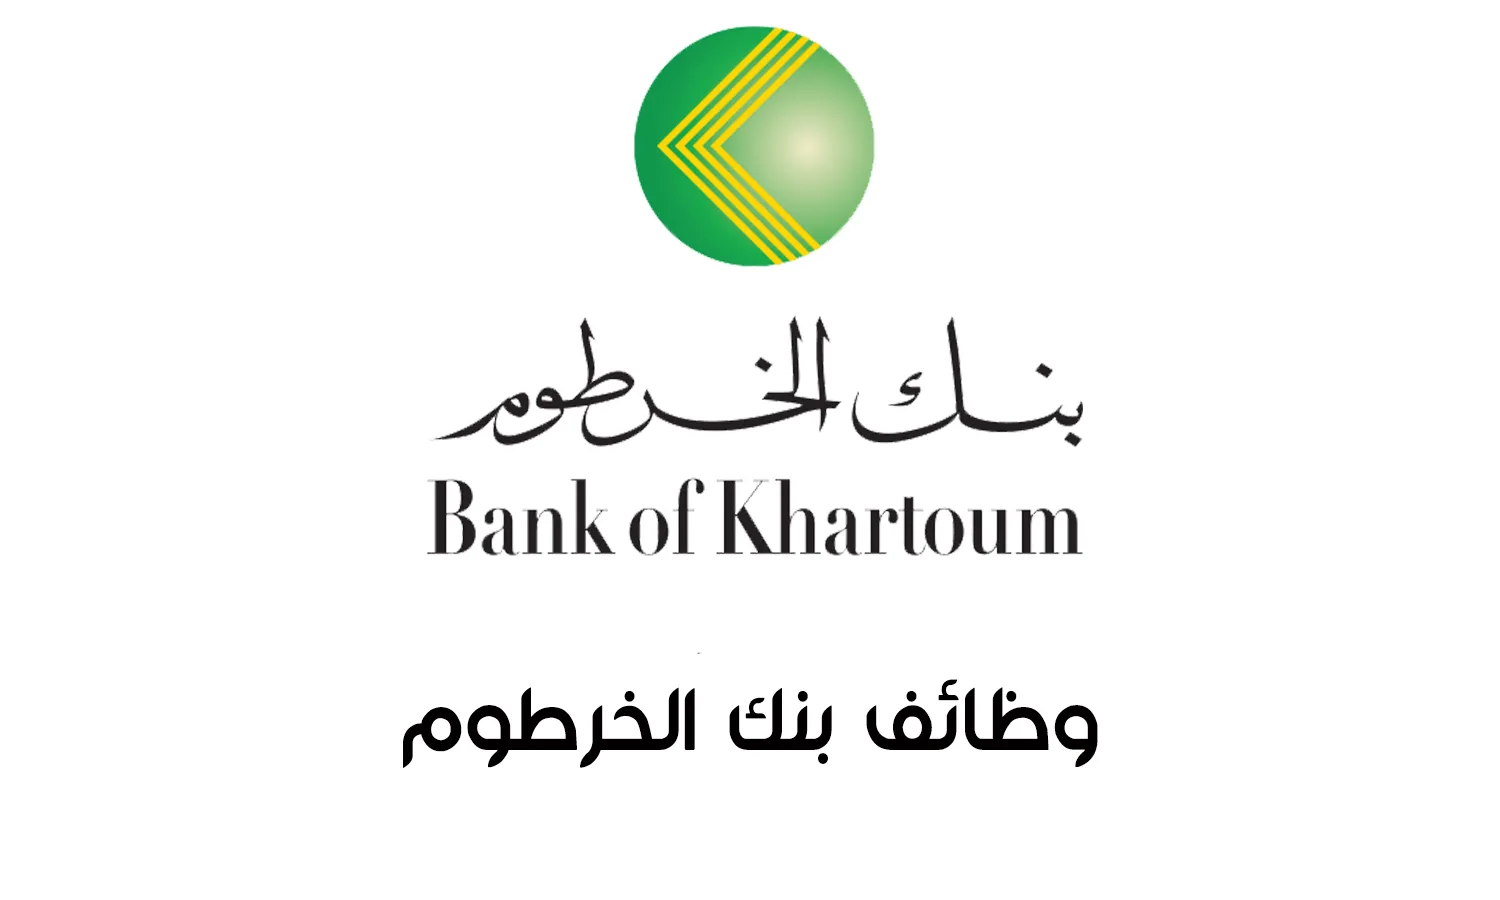 ضابط إدارة المرافق Bank of Khartoum Administration Facility Officer |  بنك الخرطوم